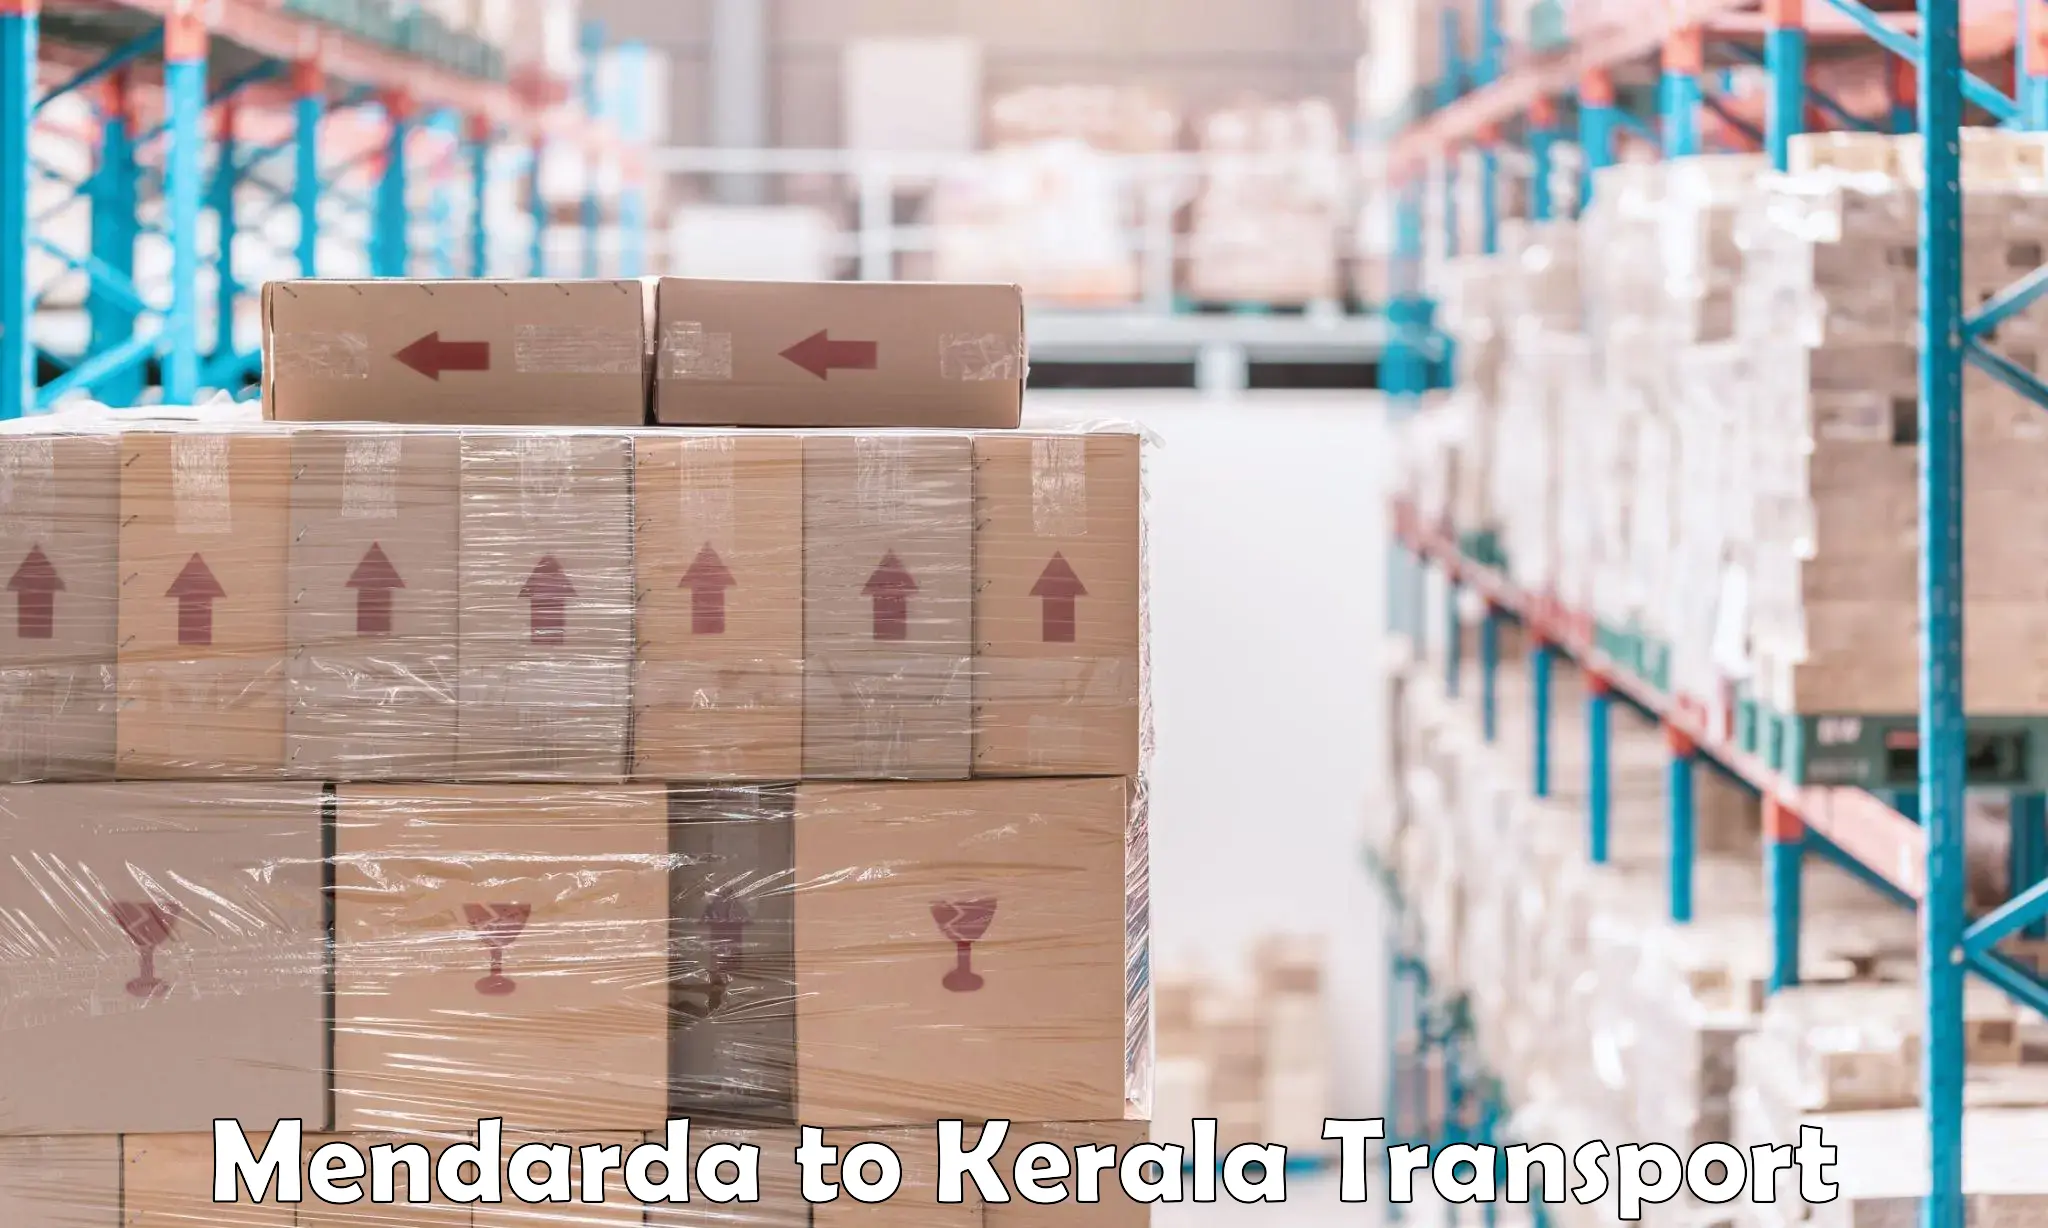 Shipping partner Mendarda to Chervathur